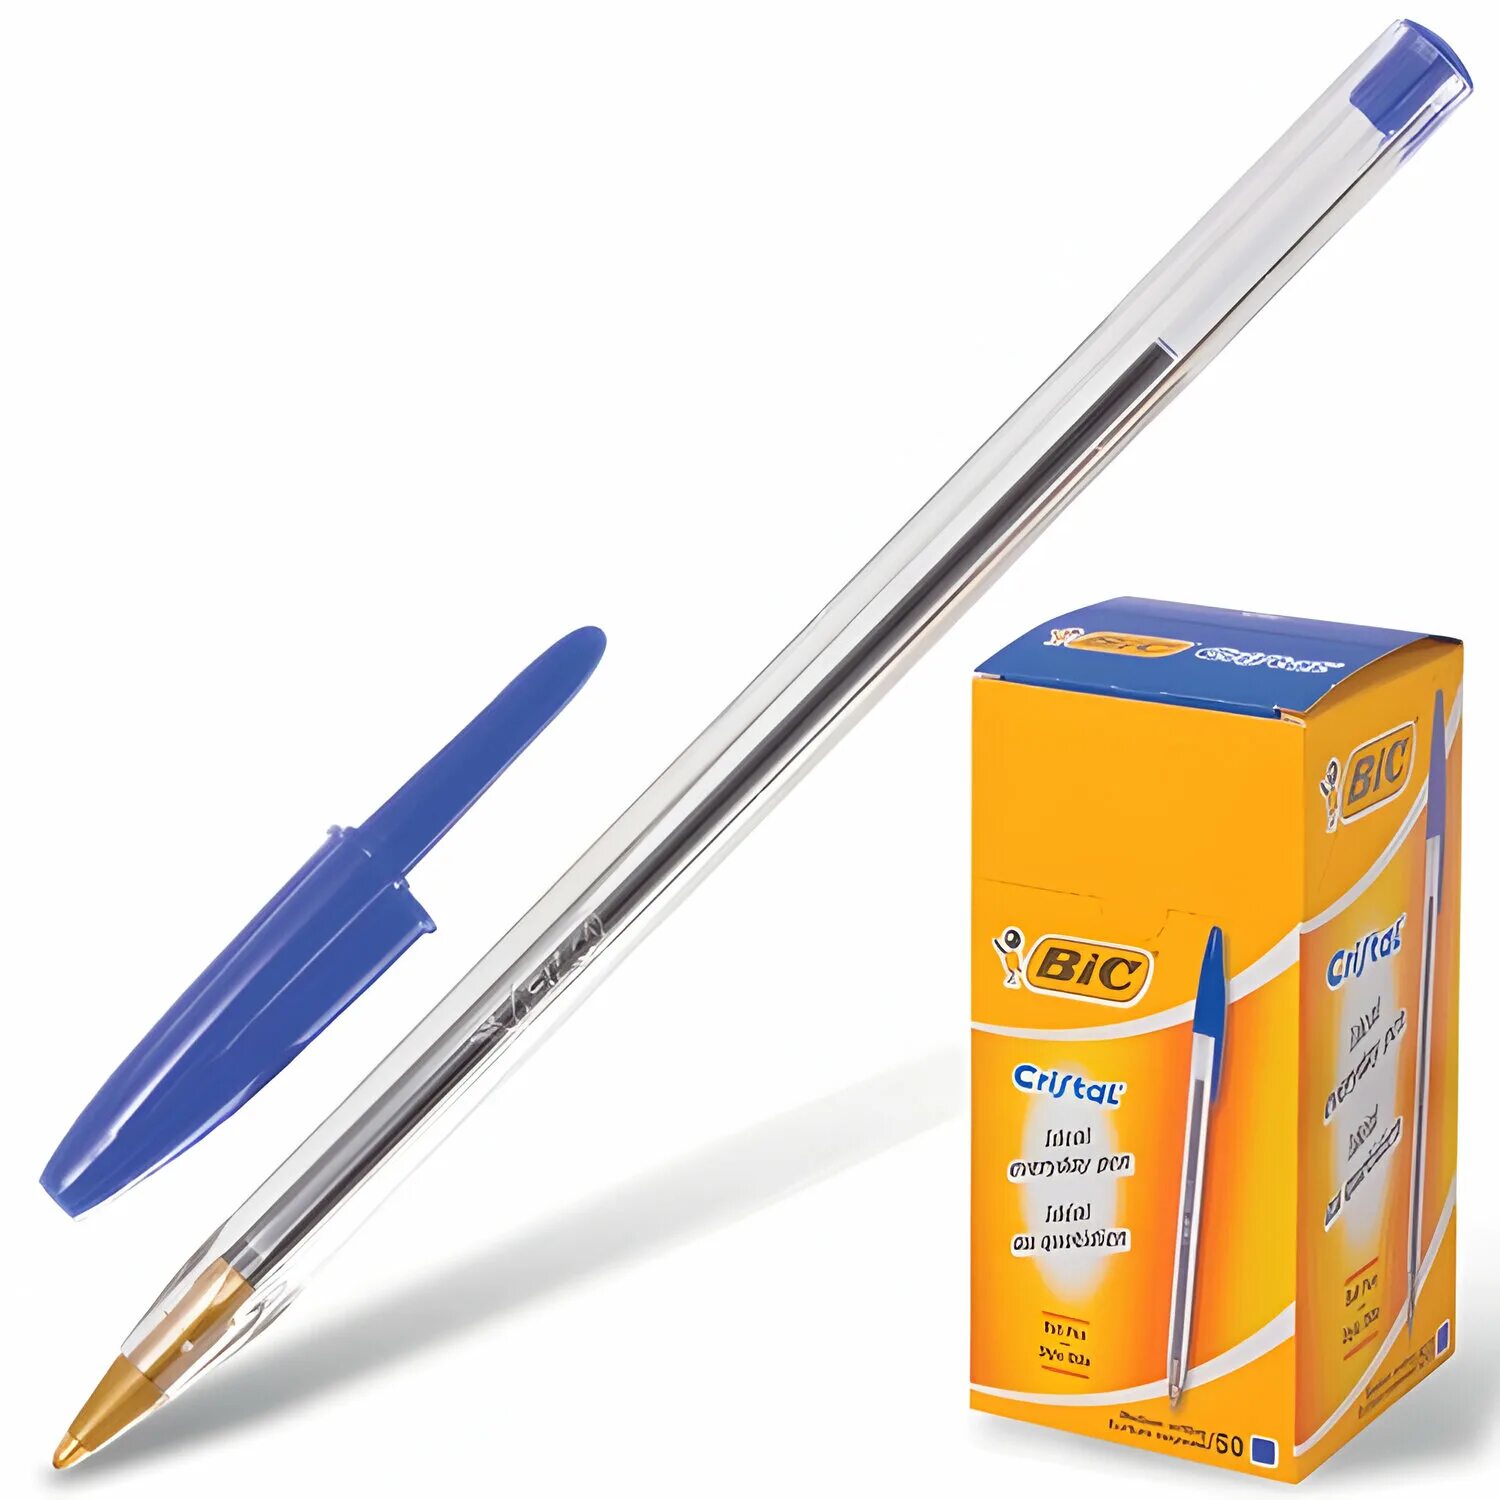 Ручка шариковая синяя 1 мм. Ручка шариковая BIC Cristal (синий). Ручка шариковая big Crystal. Ручки BIC Cristal 1.6. Ручка Биг Кристалл 1.6 мм.